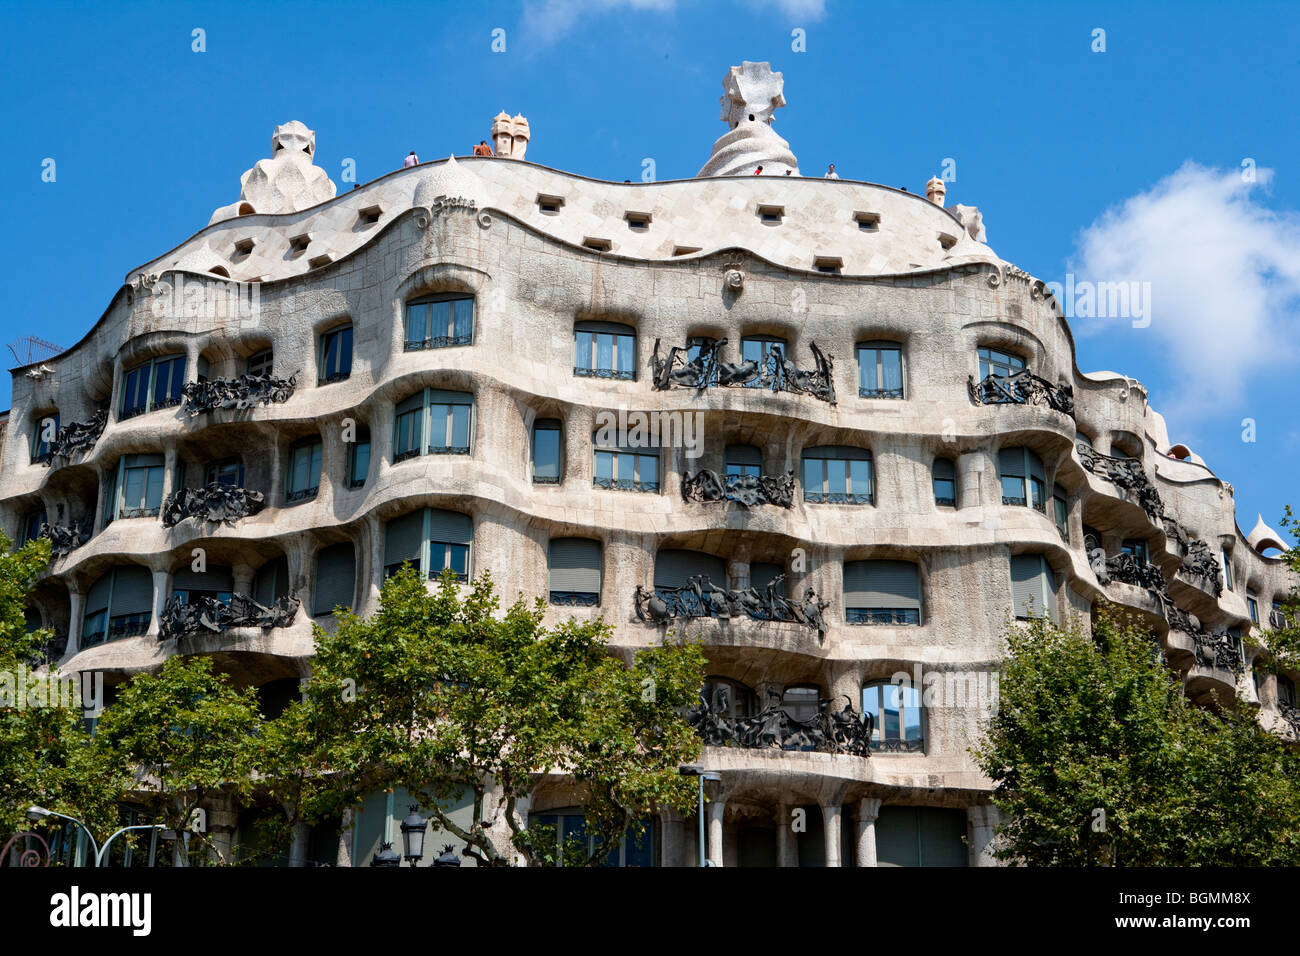 Barcellona - Spagnolo Art Nouveau - movimento Modernisme - Gaudi - quartiere Eixample - Casa Mila o 'La Pedrera' - Gaudi Foto Stock